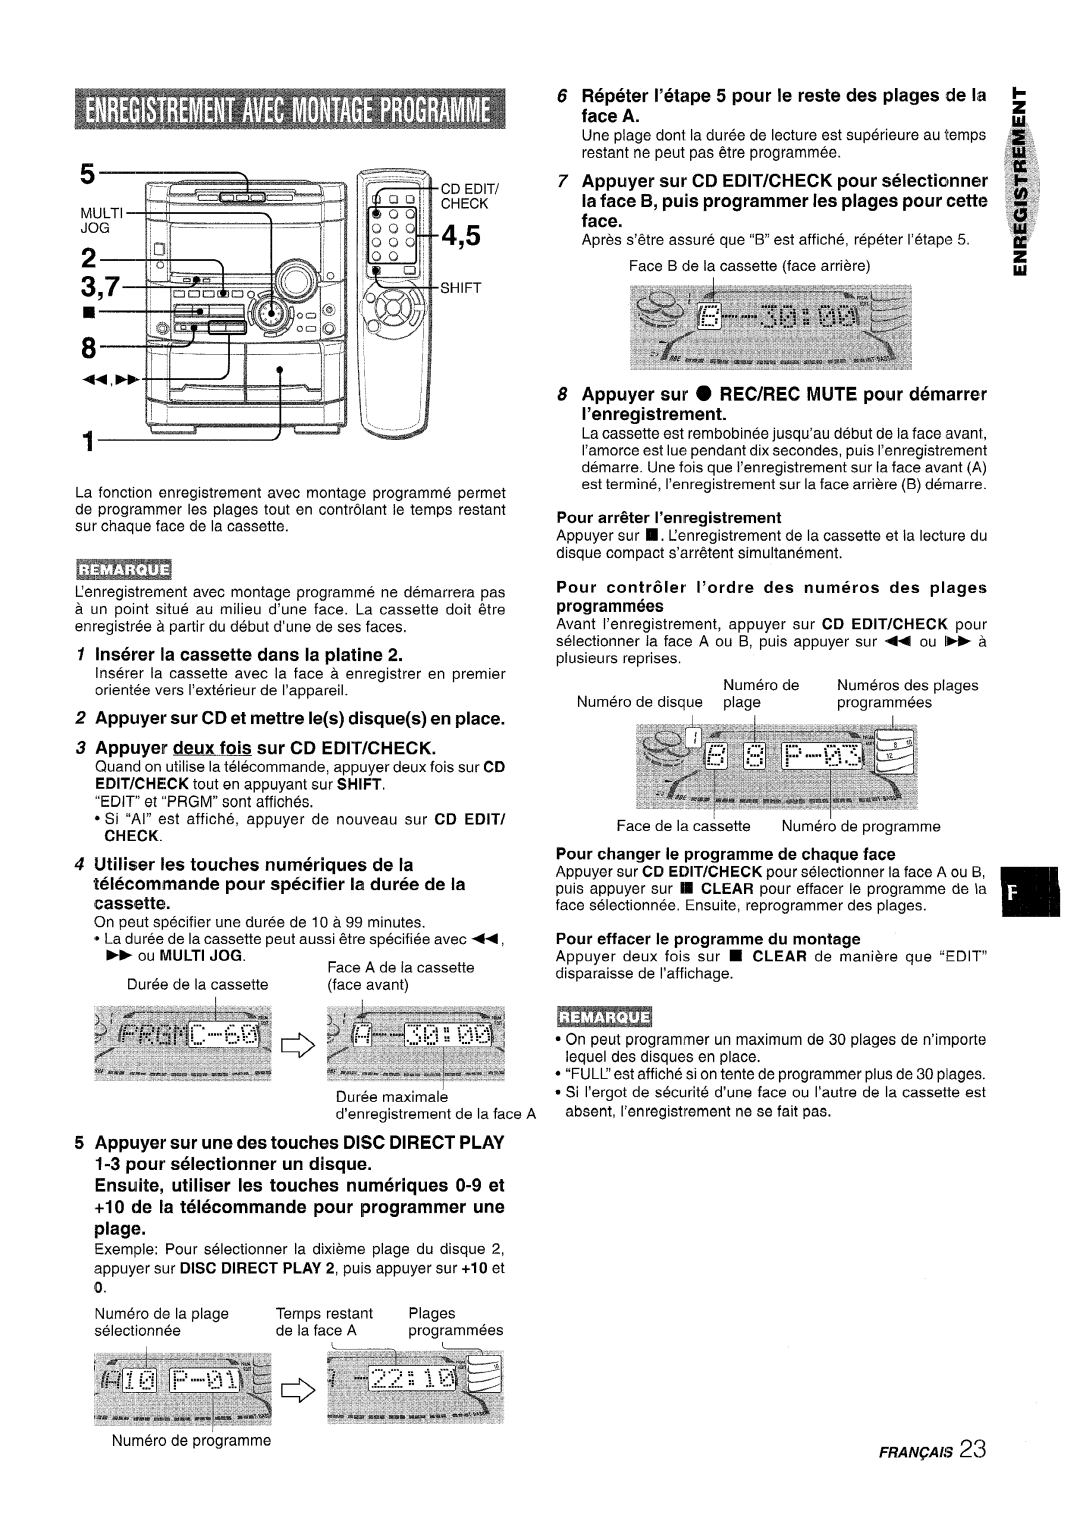 Sony NSX-A767 manual Repeter I’etape 5 pour Ie reste des plages de la face A, Appuyer deux fois sur CD EDIT/CHECK 